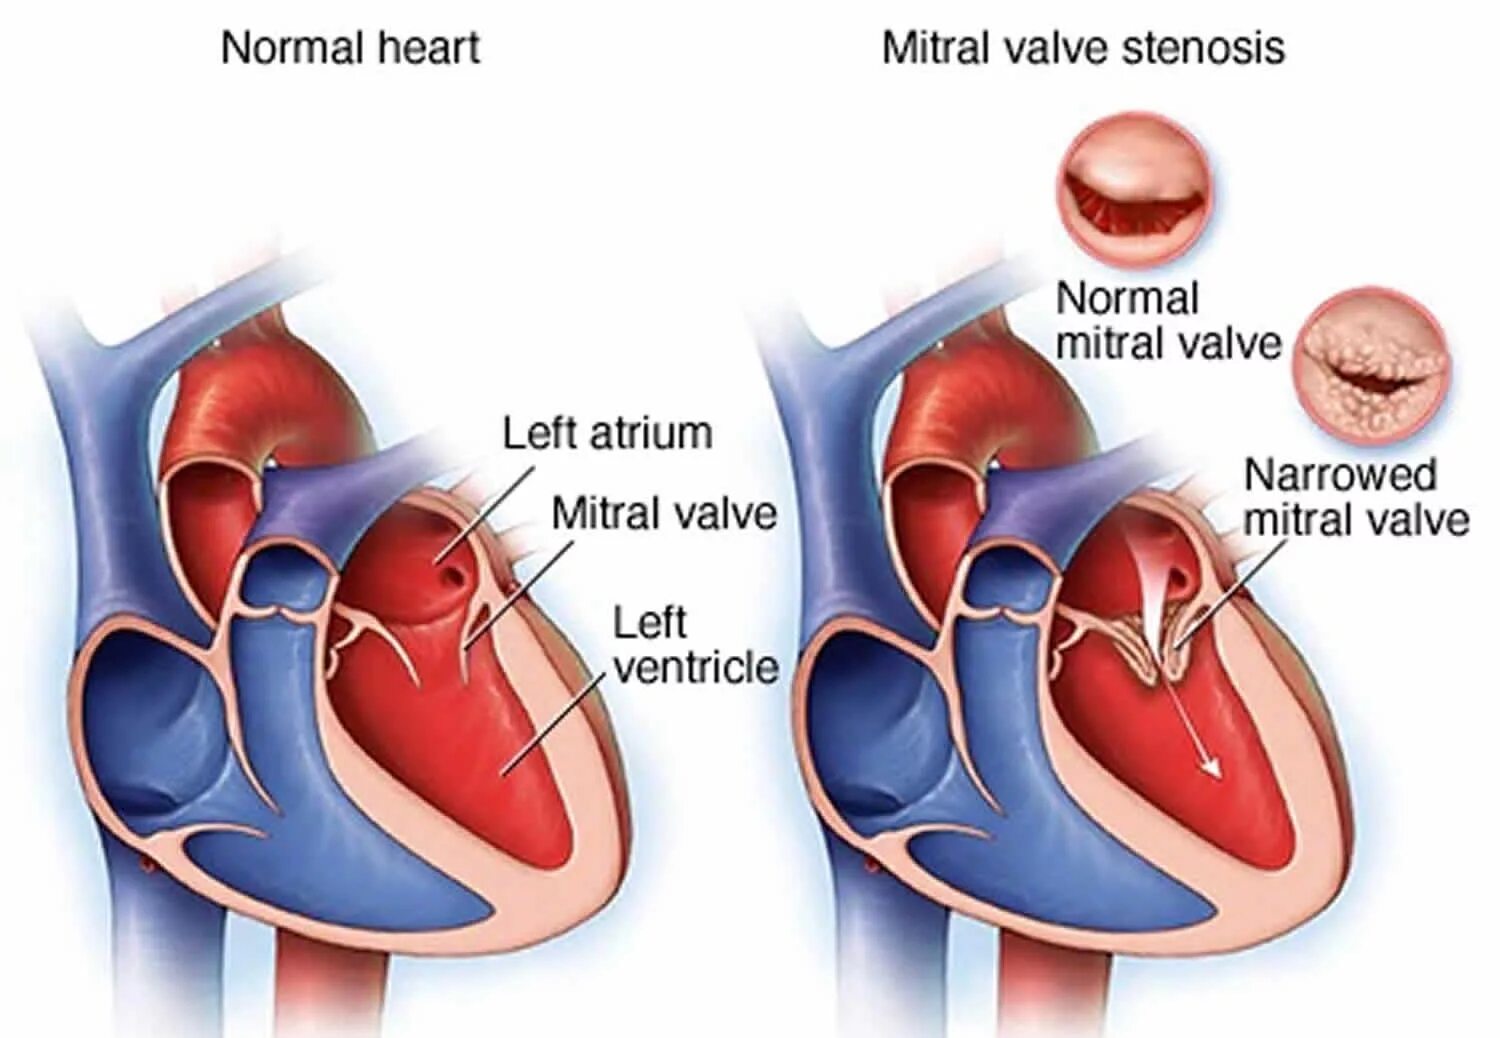 Ревматический митральный стеноз. Дефекты сердечных клапанов. Левое предсердие увеличено